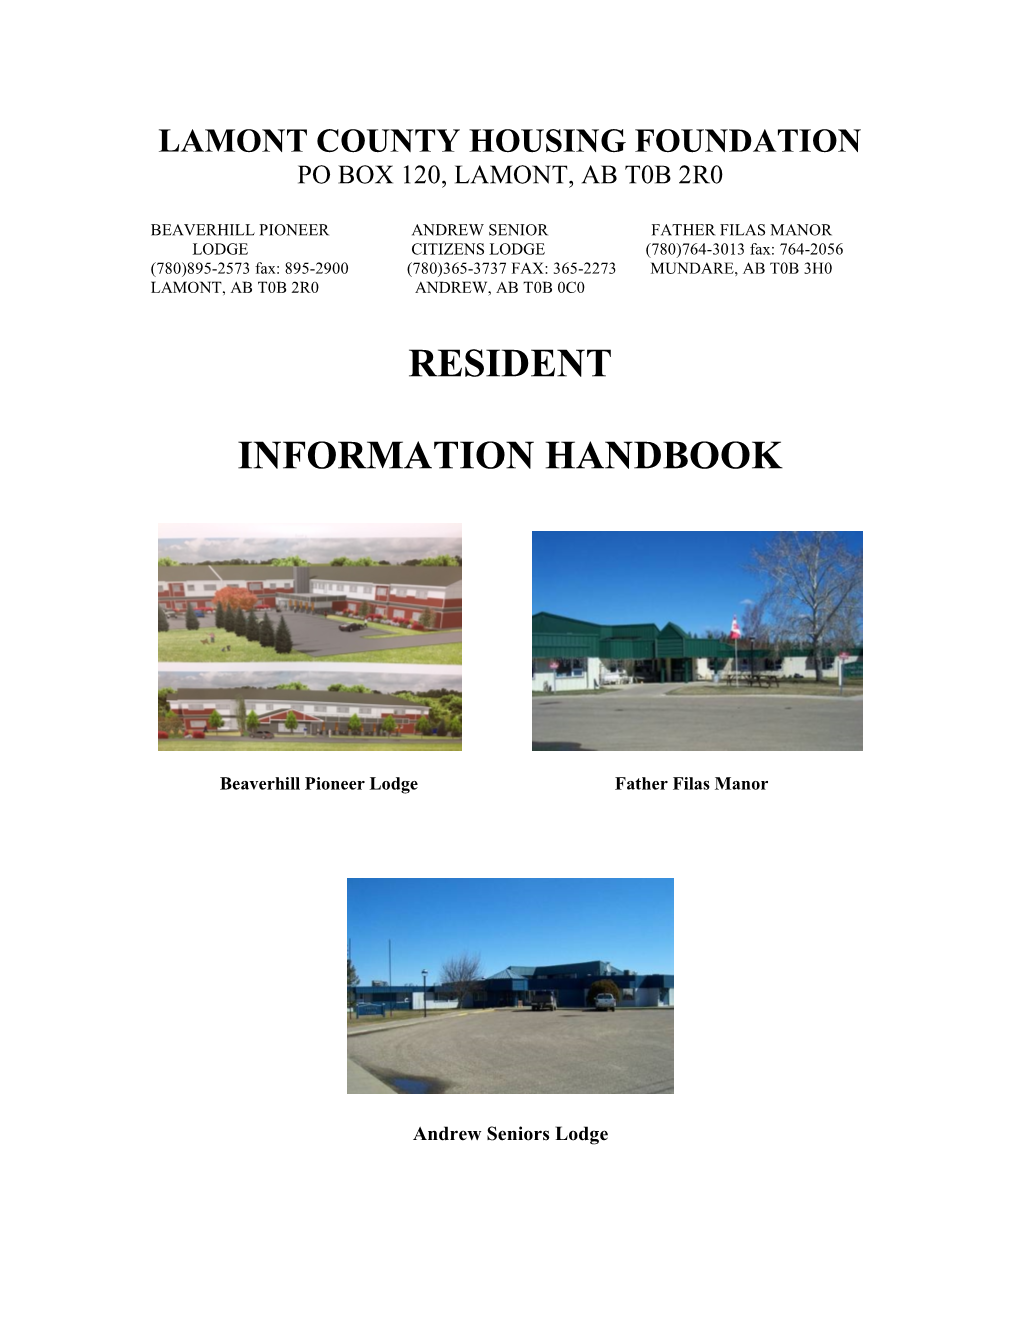 Resident Information Handbook